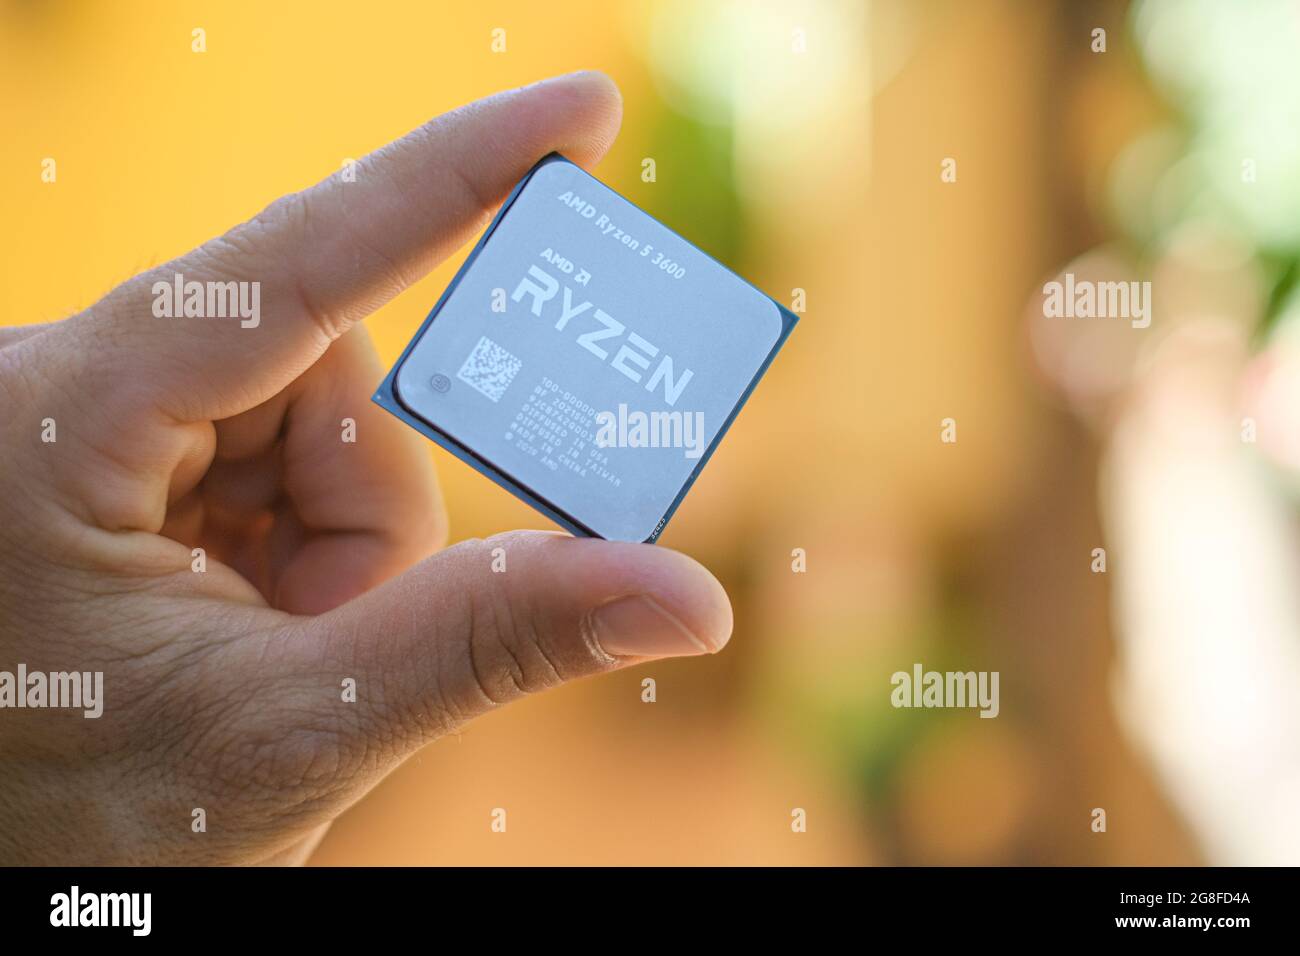 Halten Sie eine AMD ryzen 3600 Desktop-pc-cpu, einen Computerkomponenten-Chip, in der Hand Stockfoto